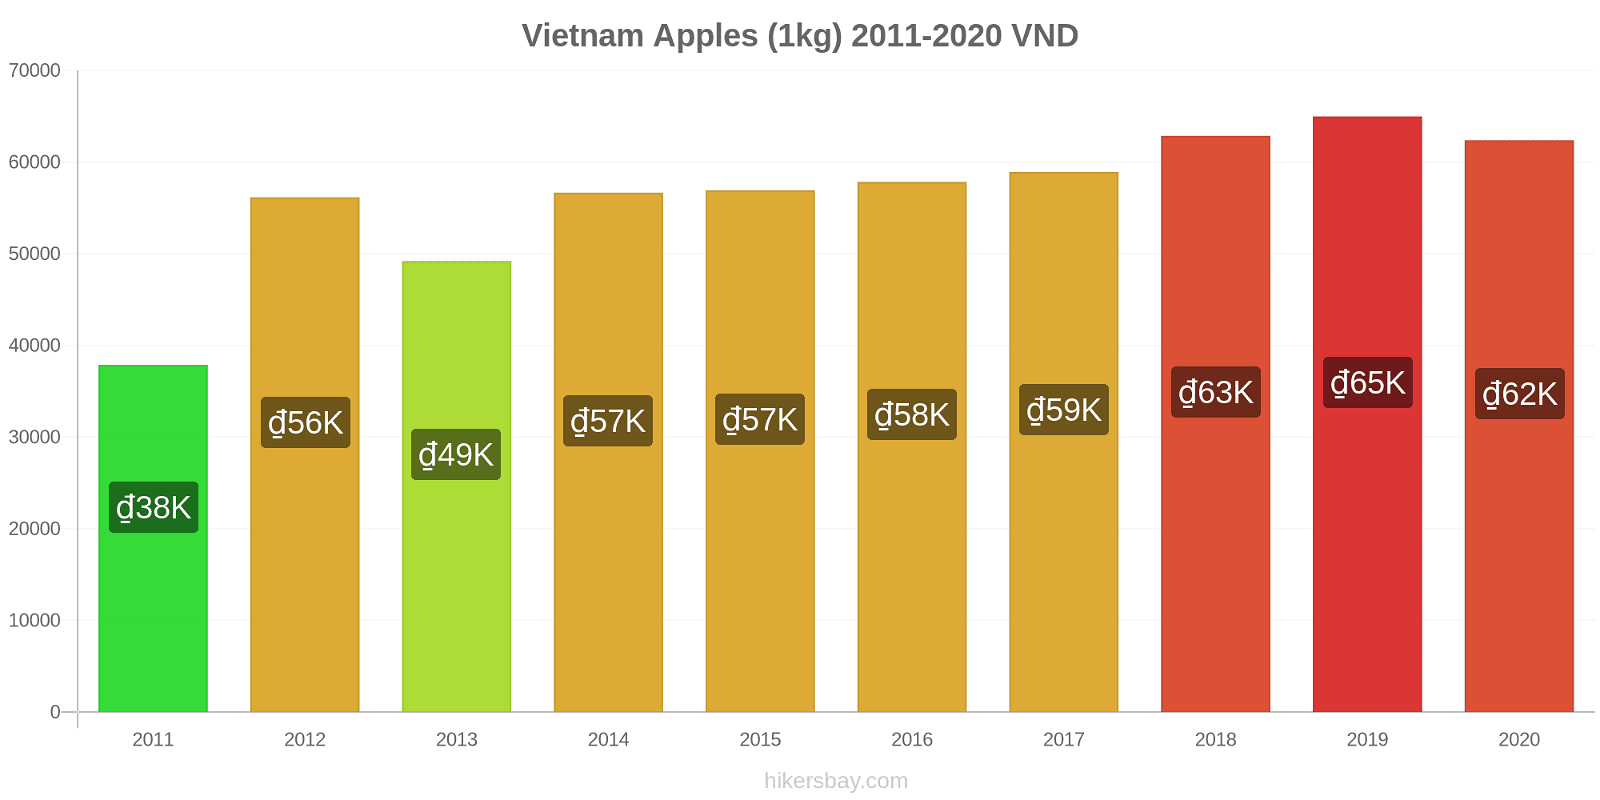 Vietnam price changes Apples (1kg) hikersbay.com